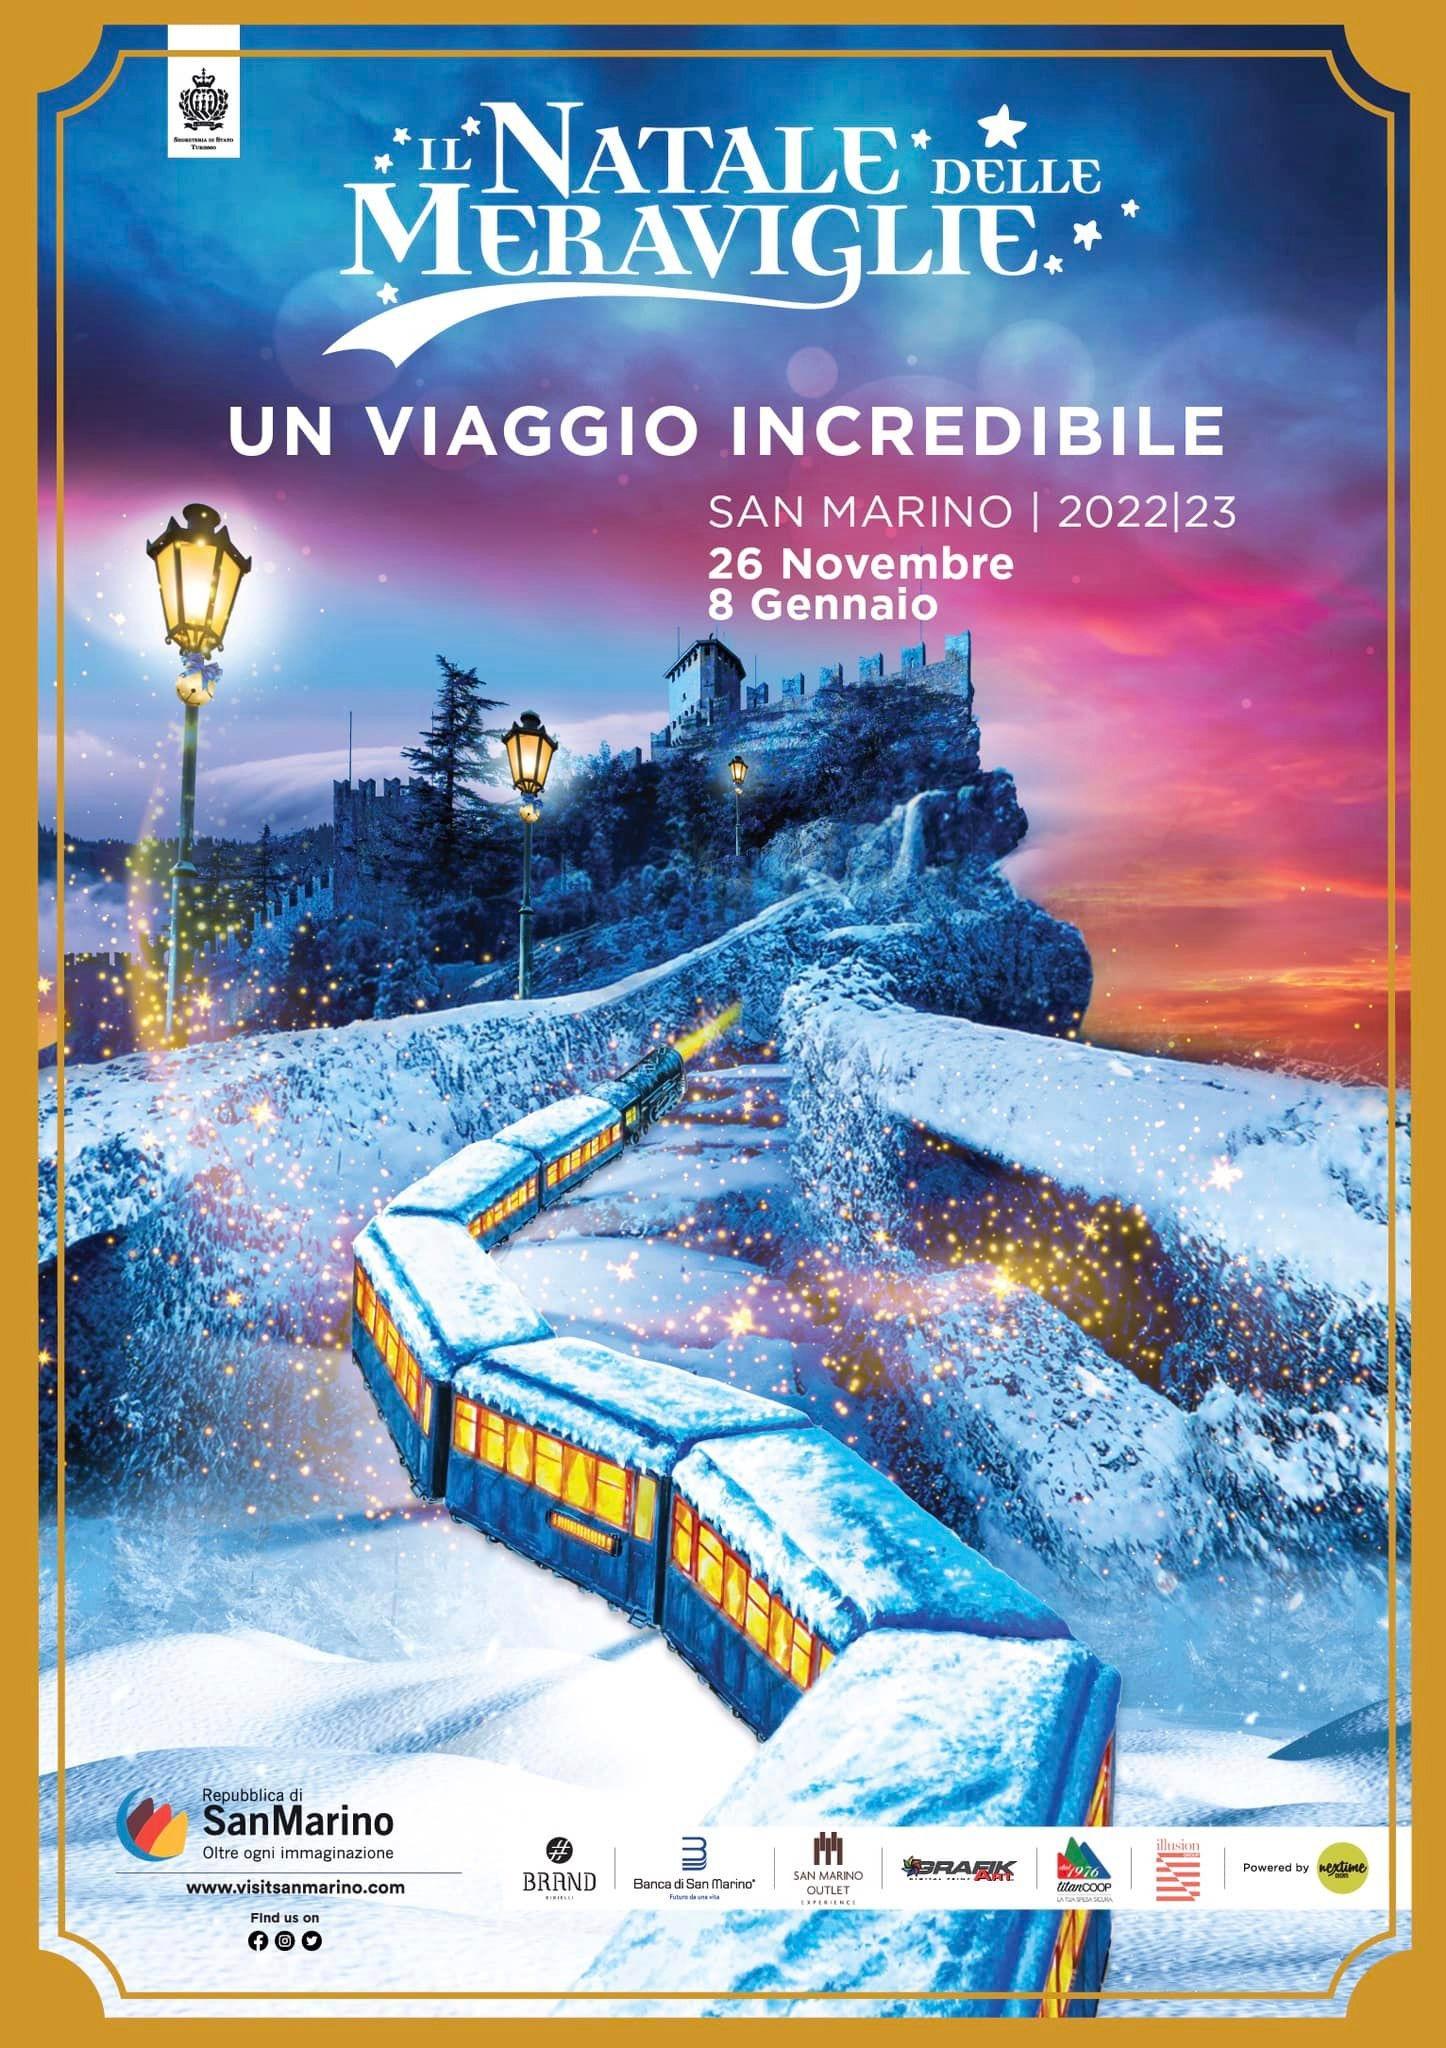 Un viaggio incredibile, il magico treno del Natale ferma a San Marino